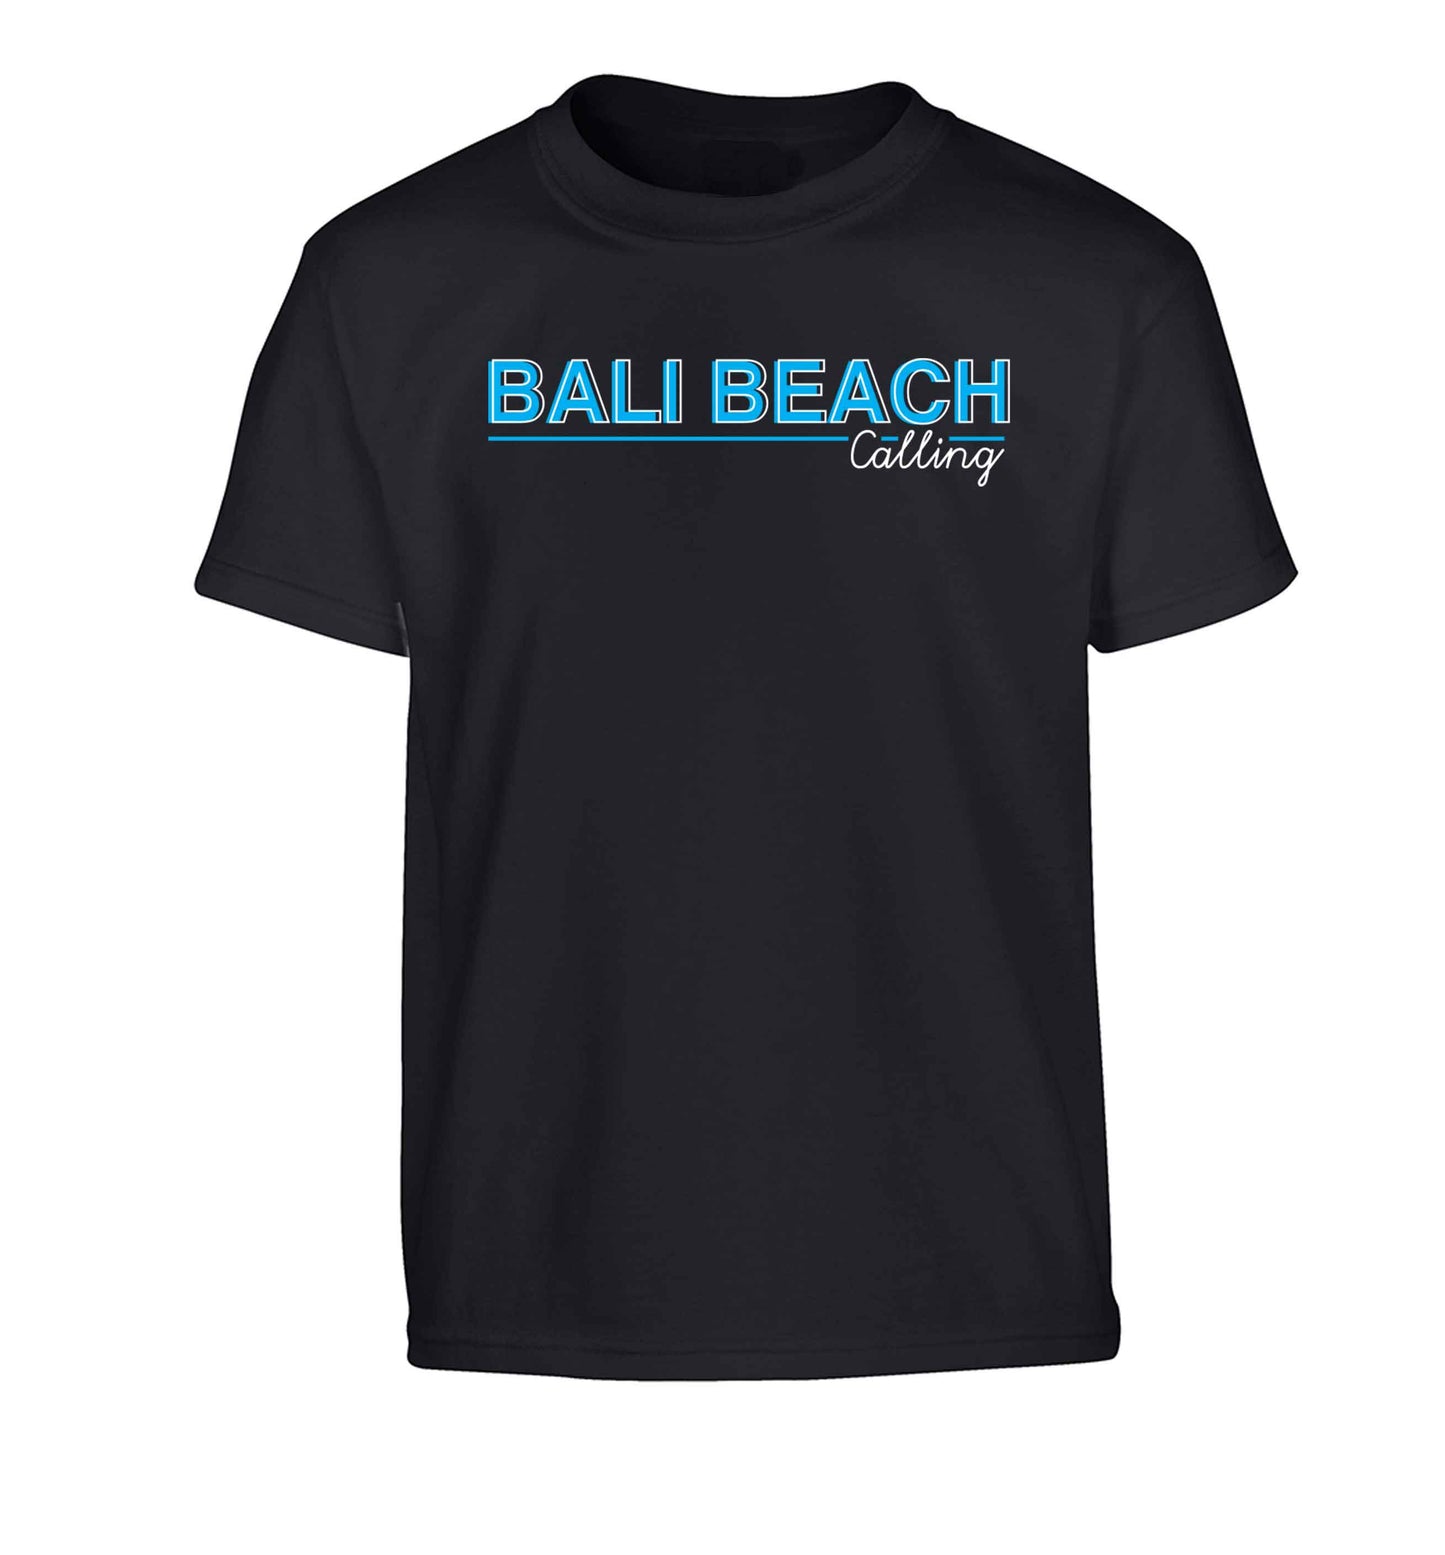 Bali beach calling Children's black Tshirt 12-13 Years